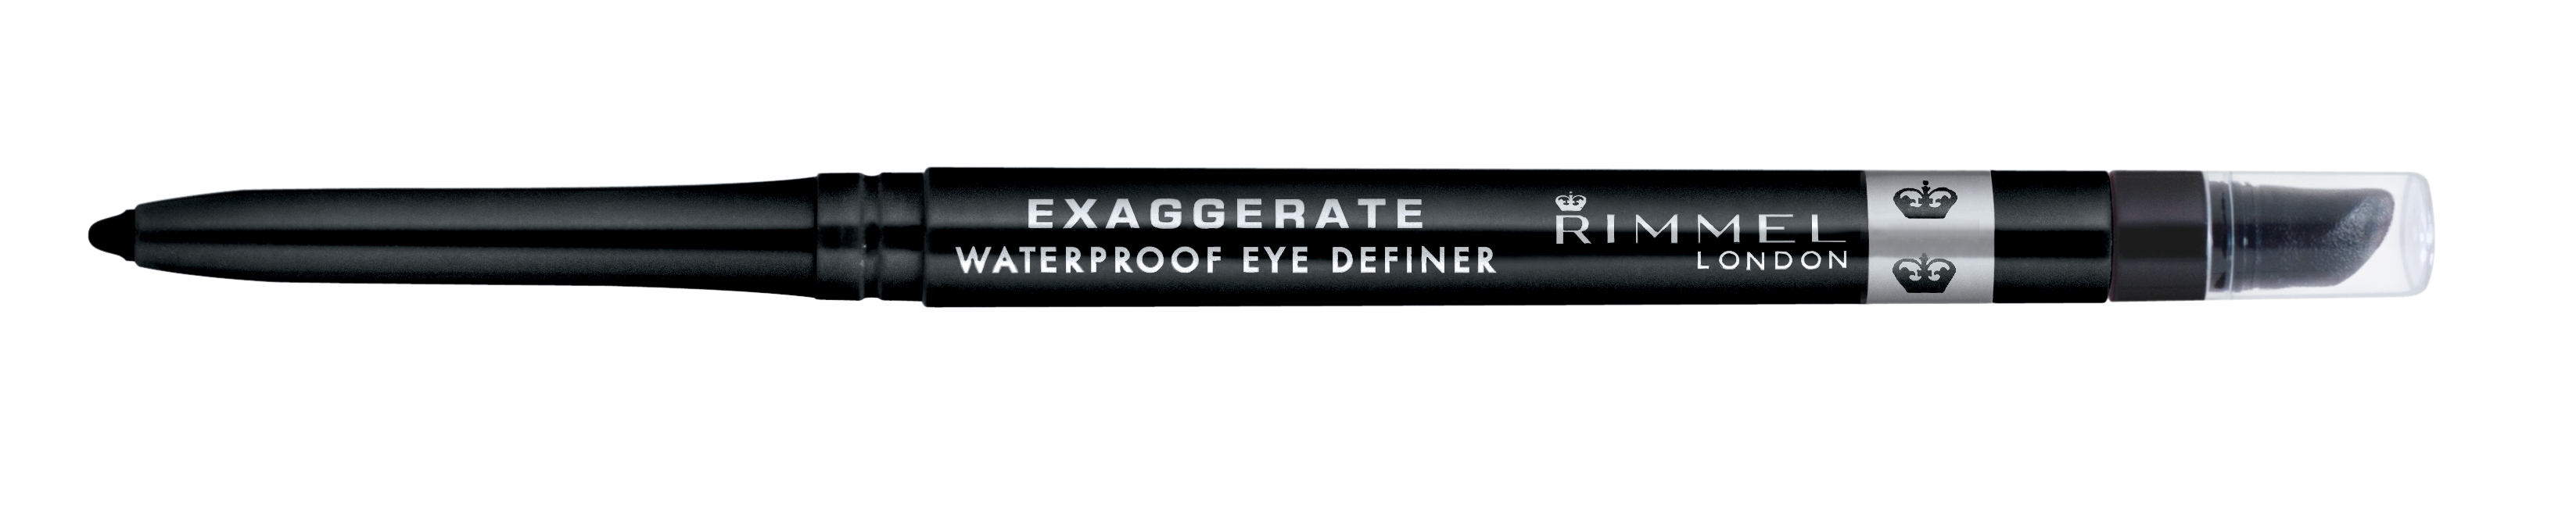 Rimmel London Exaggerate Waterproof Eye Definer Eyeliner 262, Noir, 0.01oz - image 1 of 8